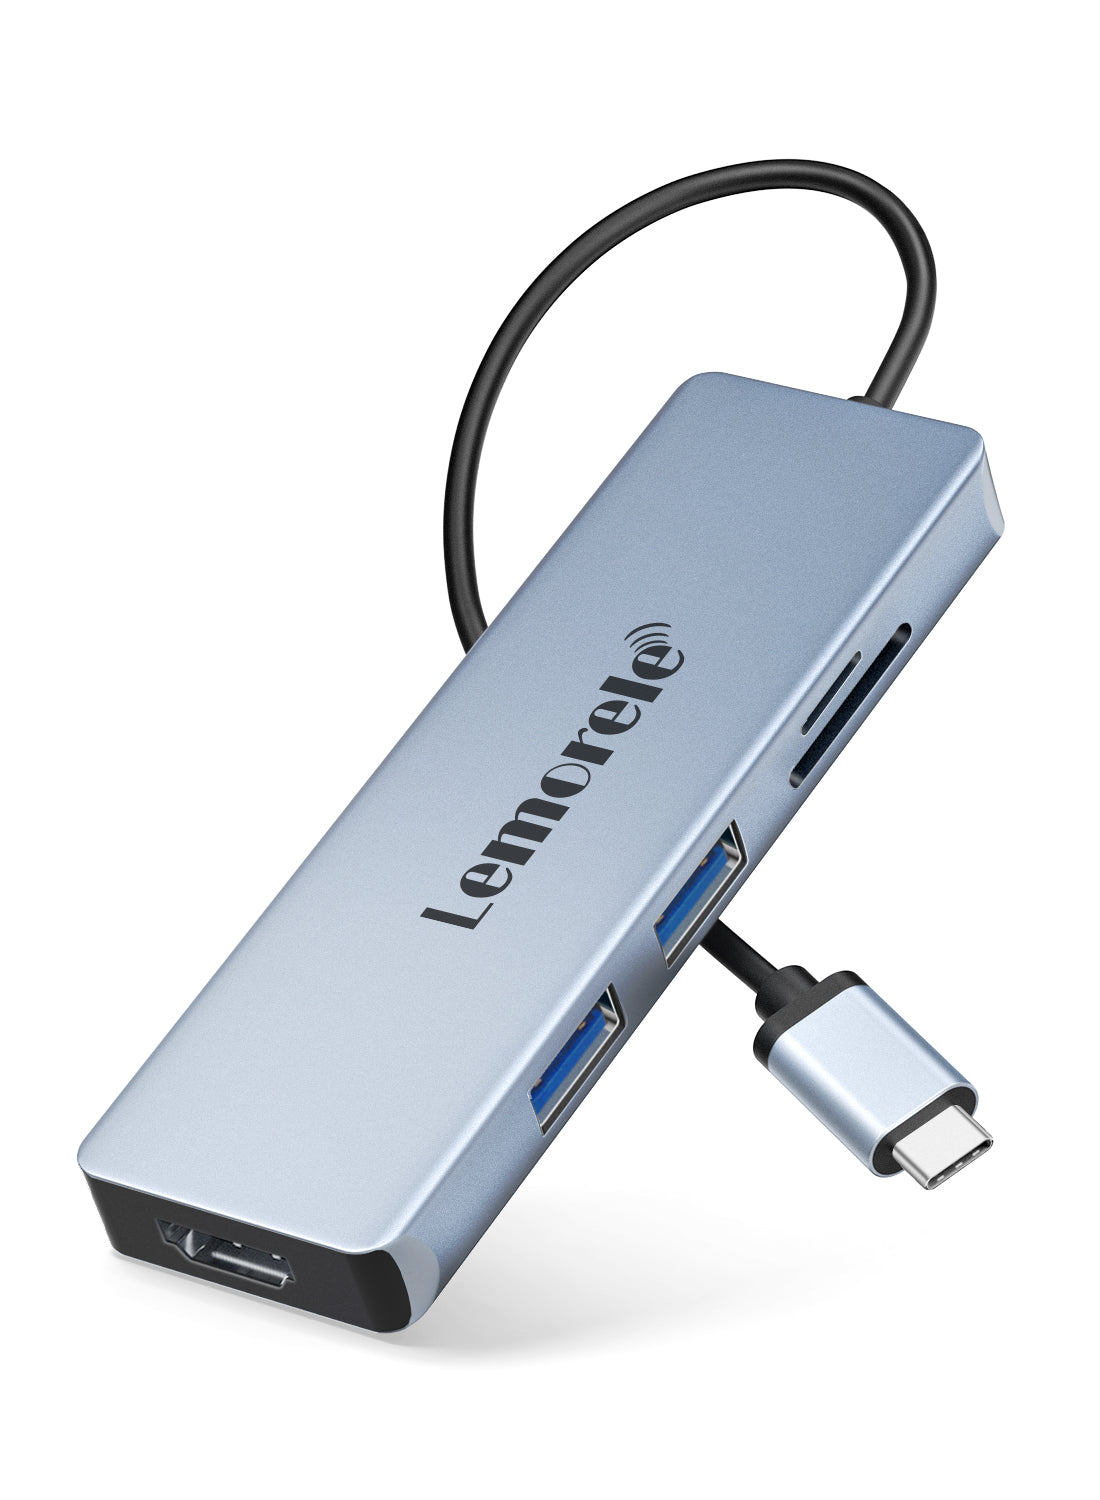 Hub USB C Lemorele 5 in 1 【#TC18】 